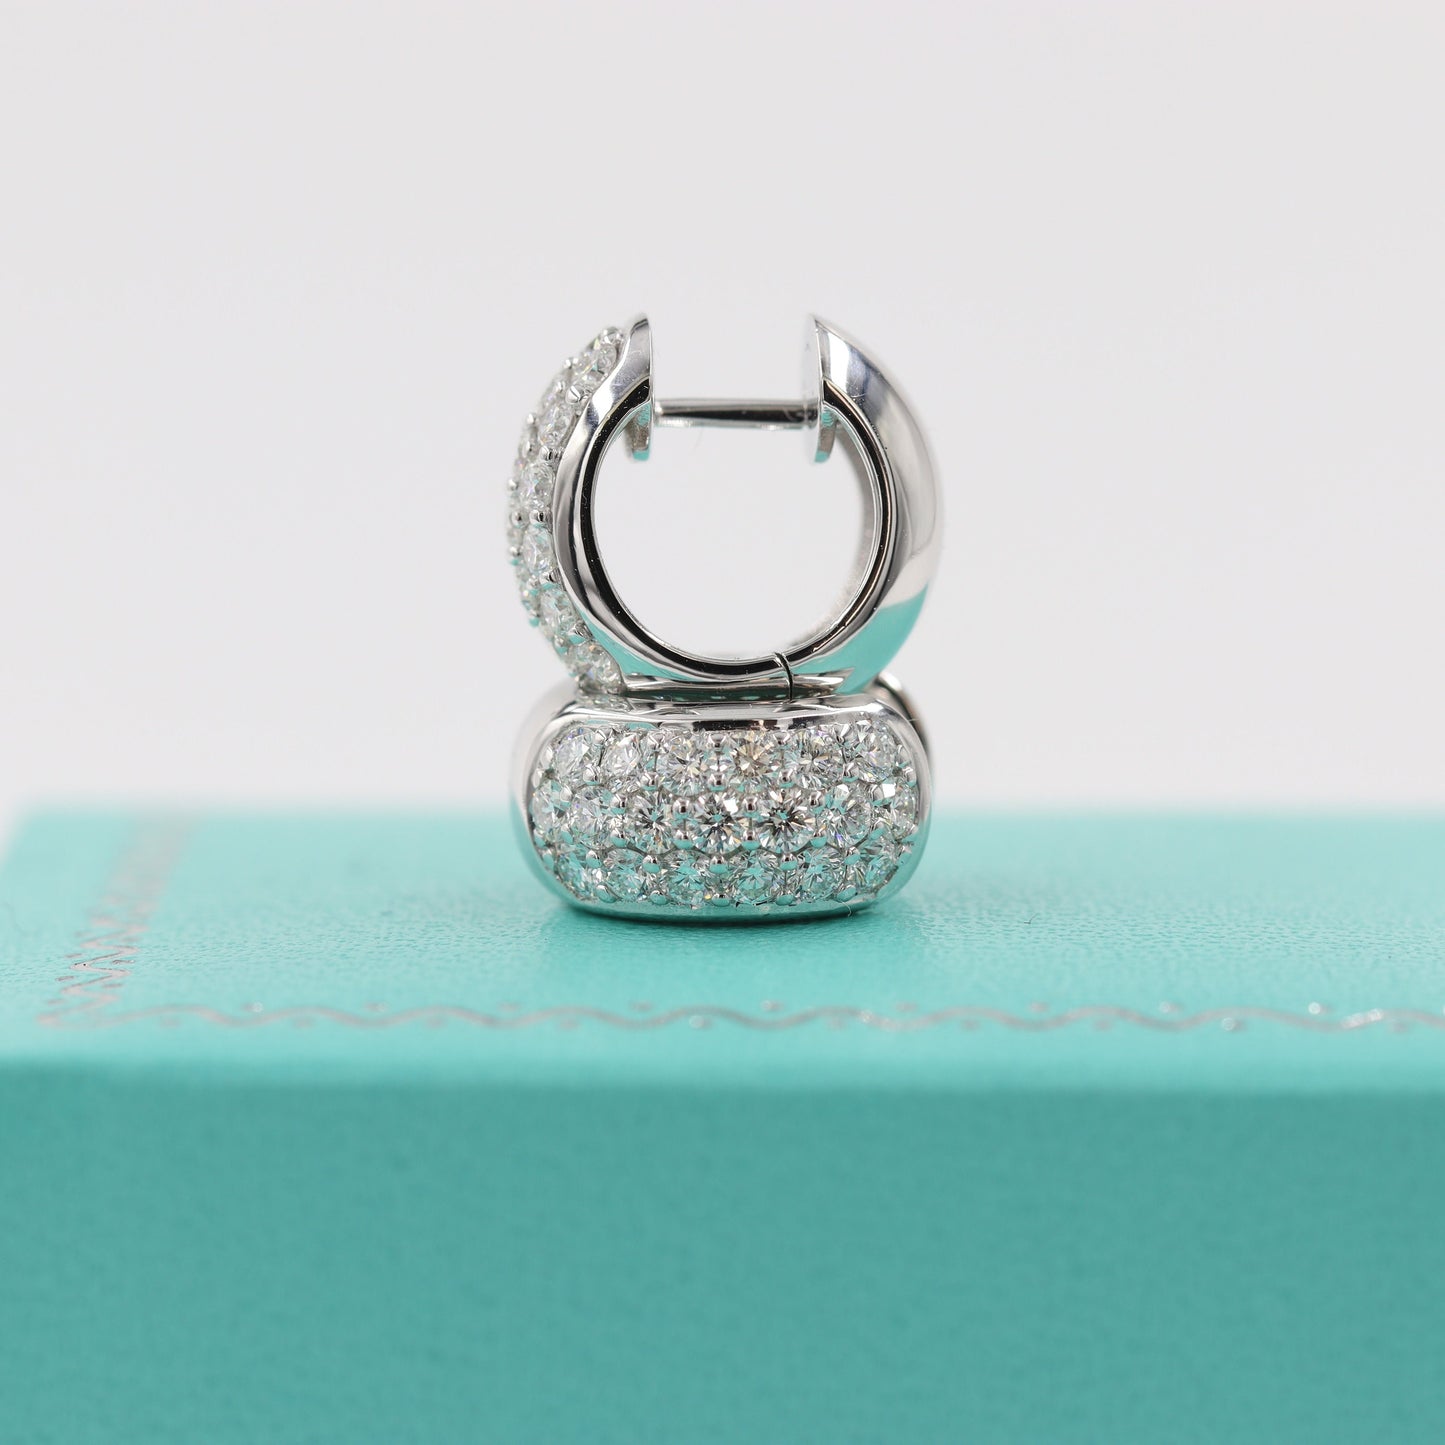 Diameter 13mm Diamond Huggies/ 14k Gold Diamond Huggie Hoops/ 6.5mmWidth Hoop Earrings/ Anniversary gift/ Gift for her